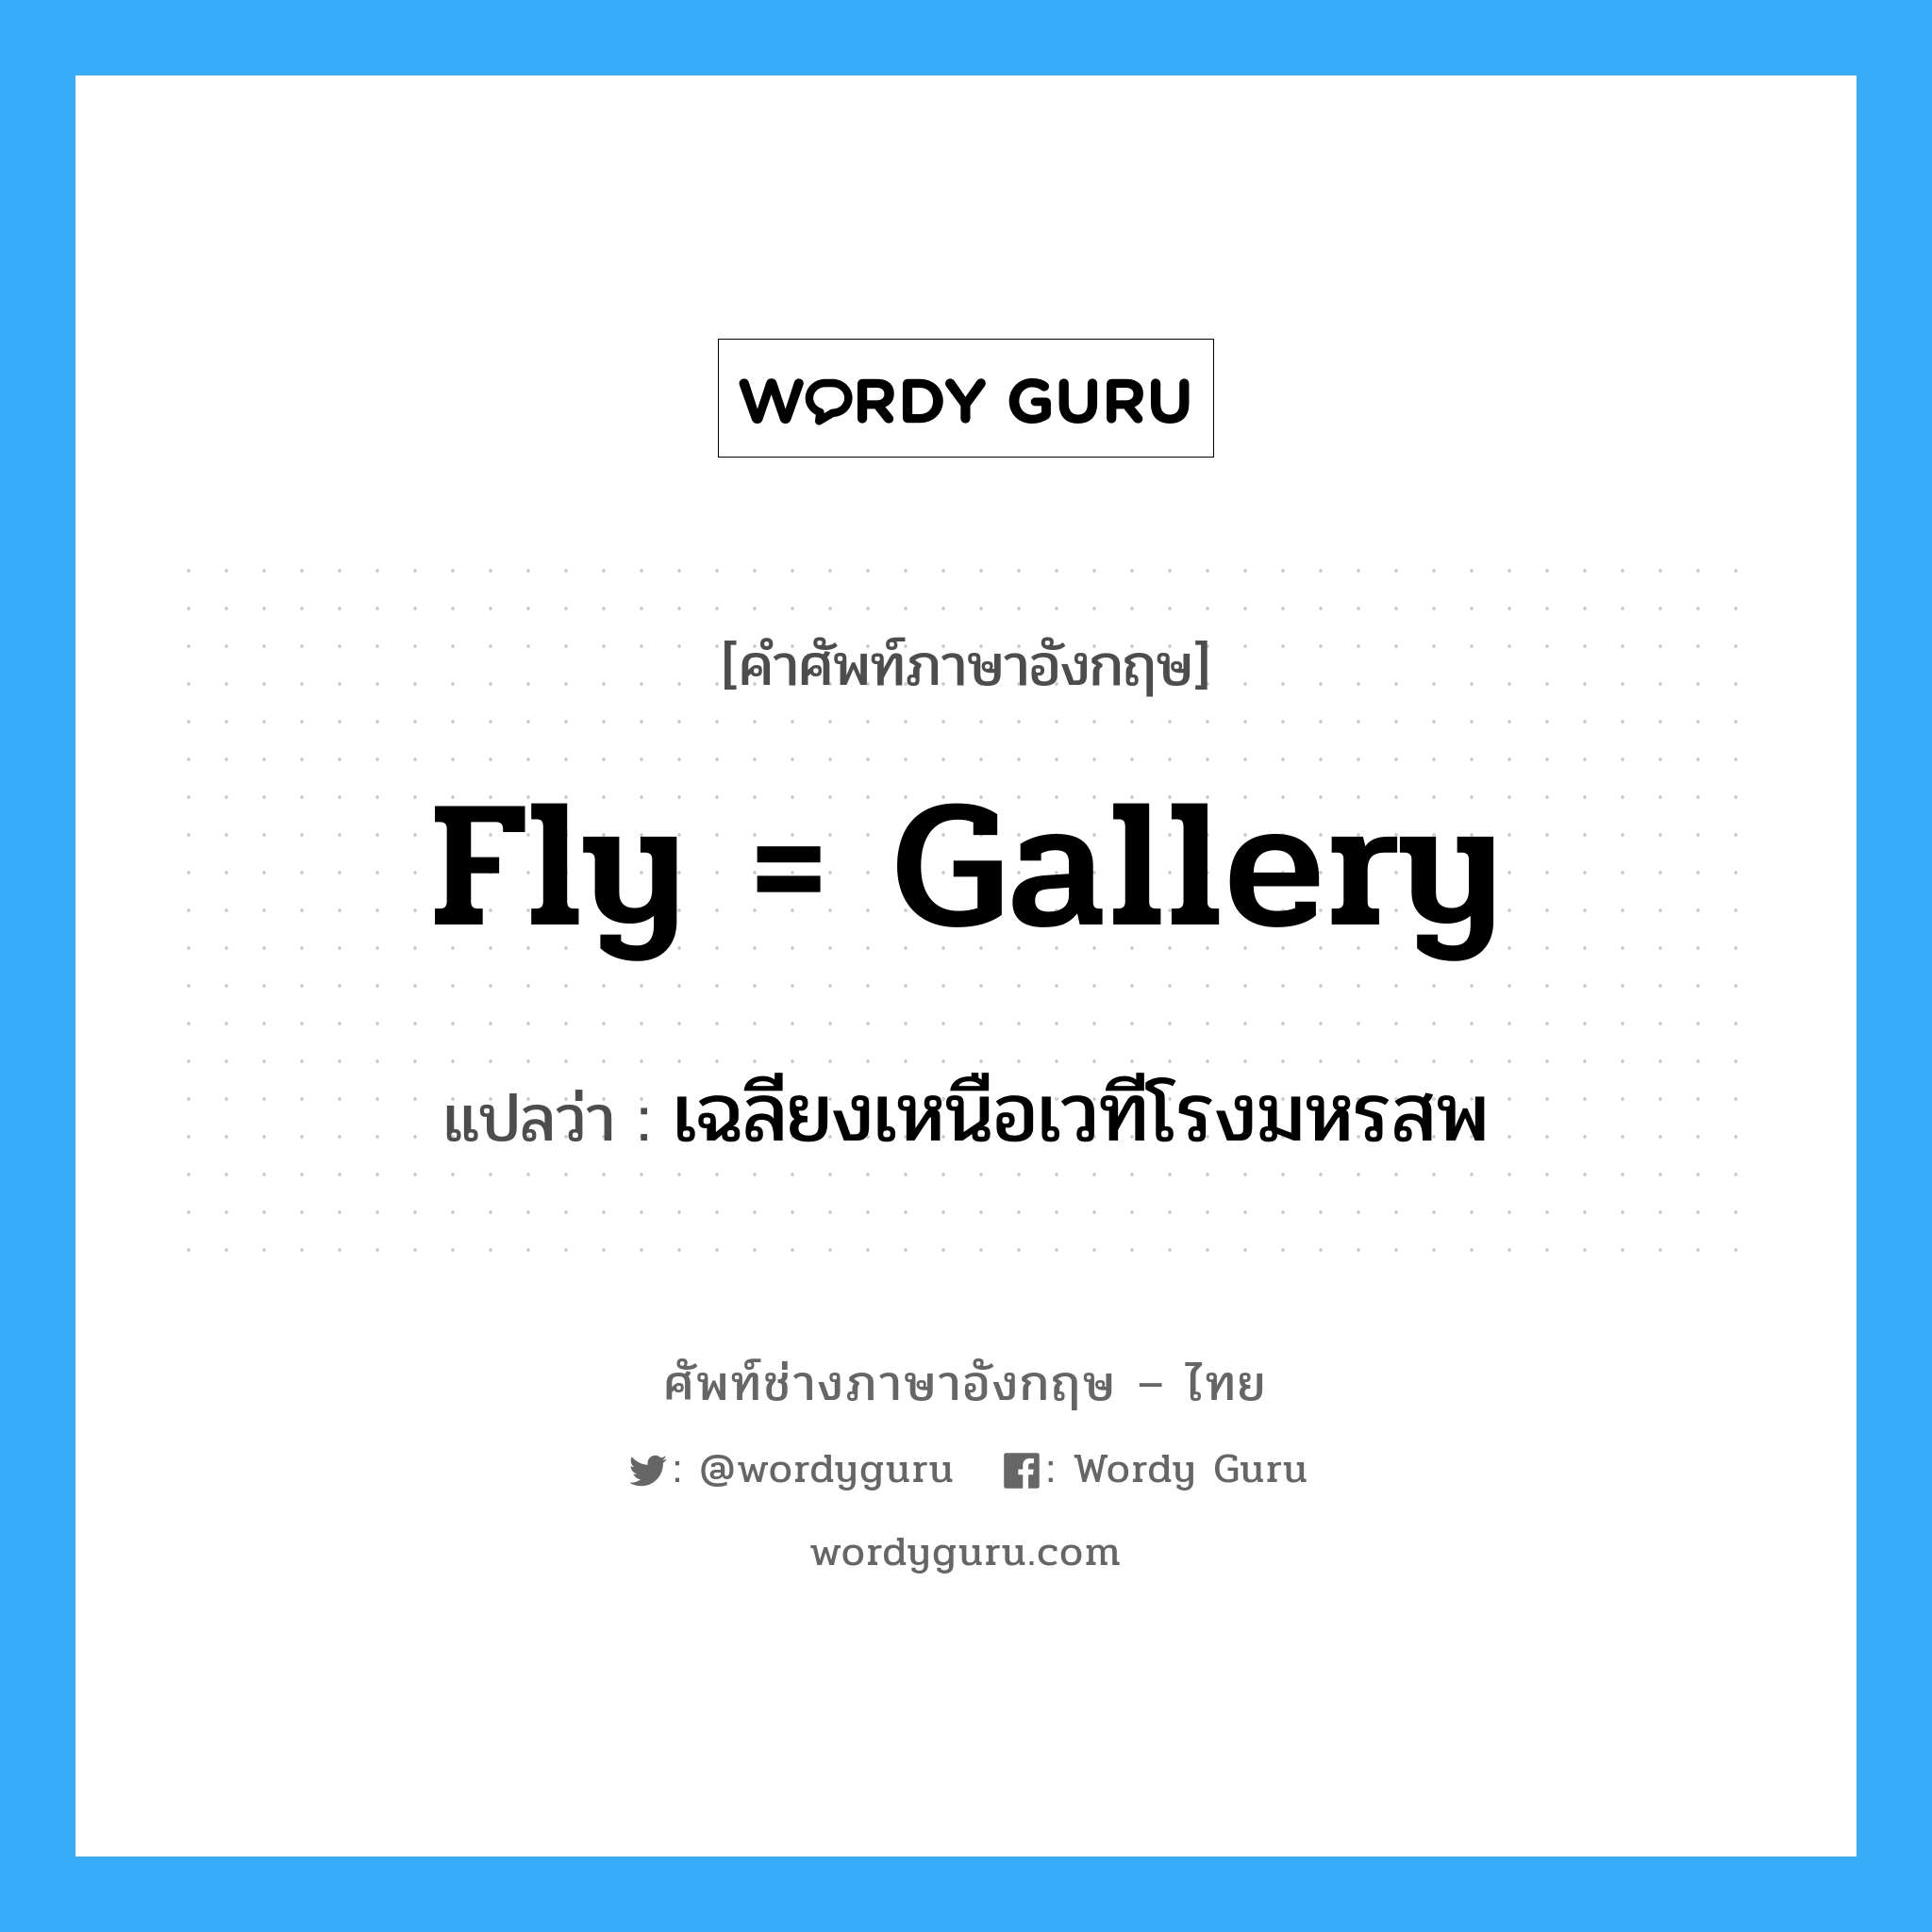 fly = gallery แปลว่า?, คำศัพท์ช่างภาษาอังกฤษ - ไทย fly = gallery คำศัพท์ภาษาอังกฤษ fly = gallery แปลว่า เฉลียงเหนือเวทีโรงมหรสพ